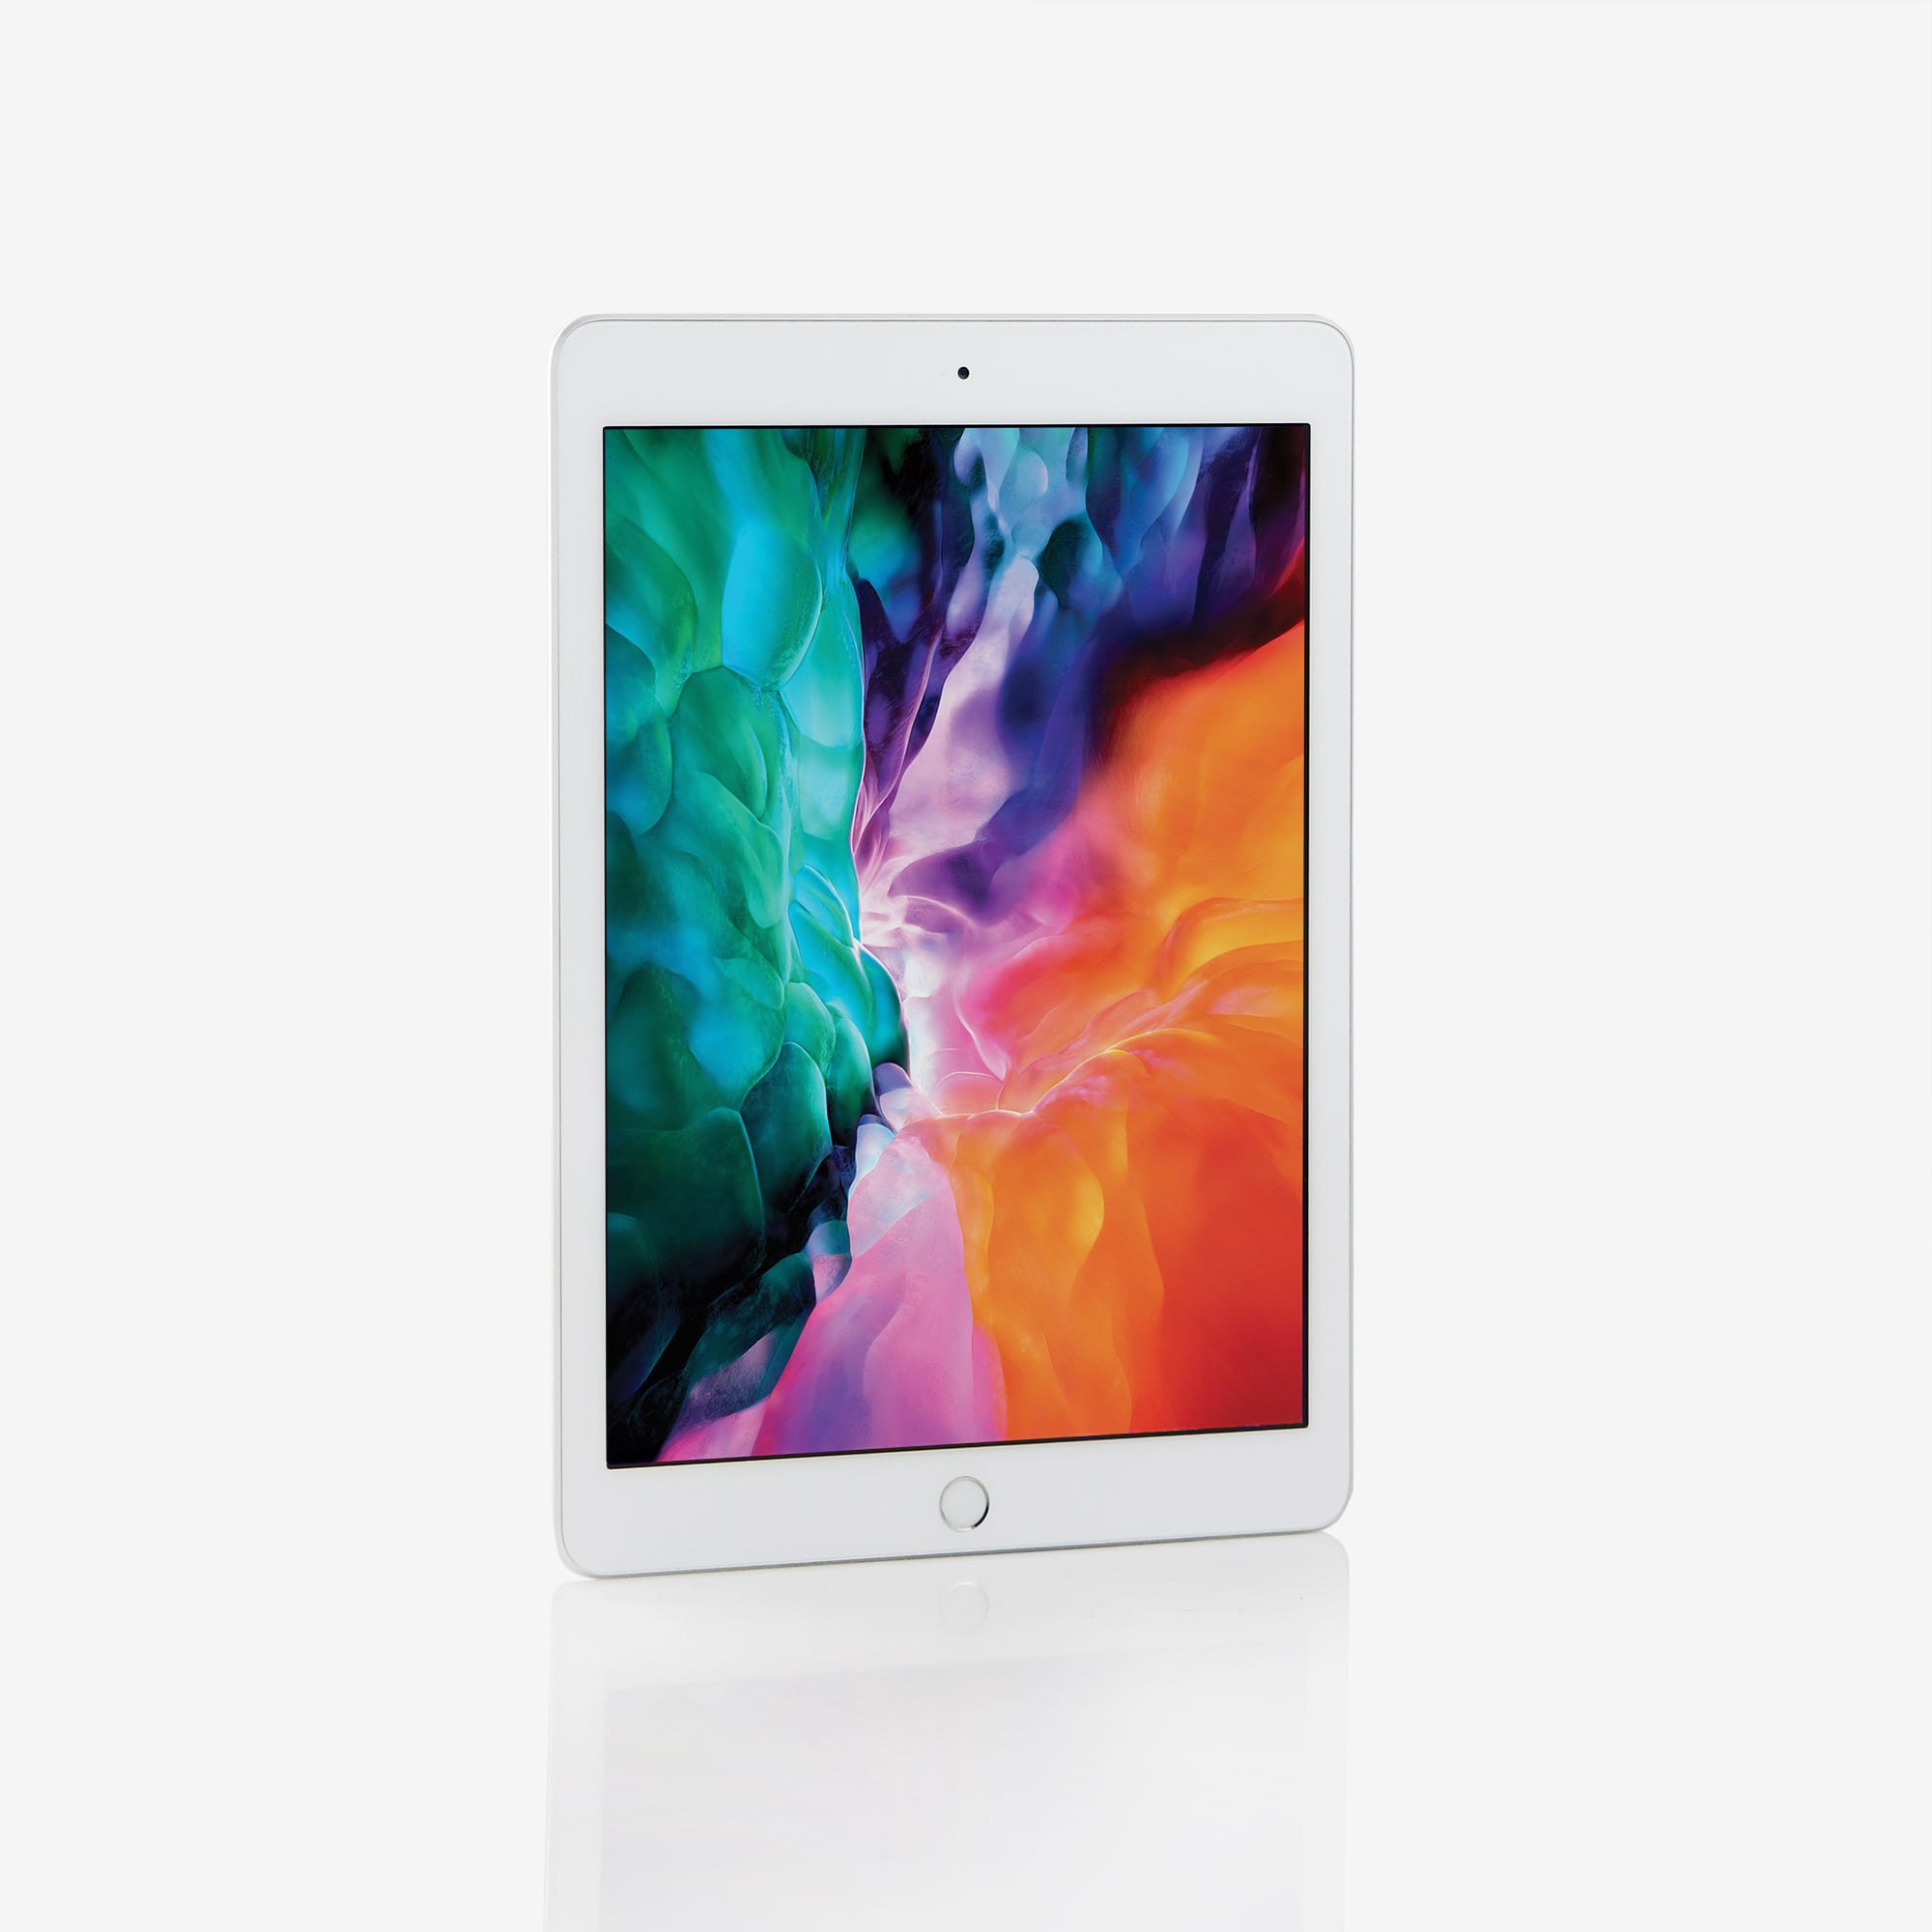 1 x iPad (6th generation) (Wi-Fi) Silver (2018)